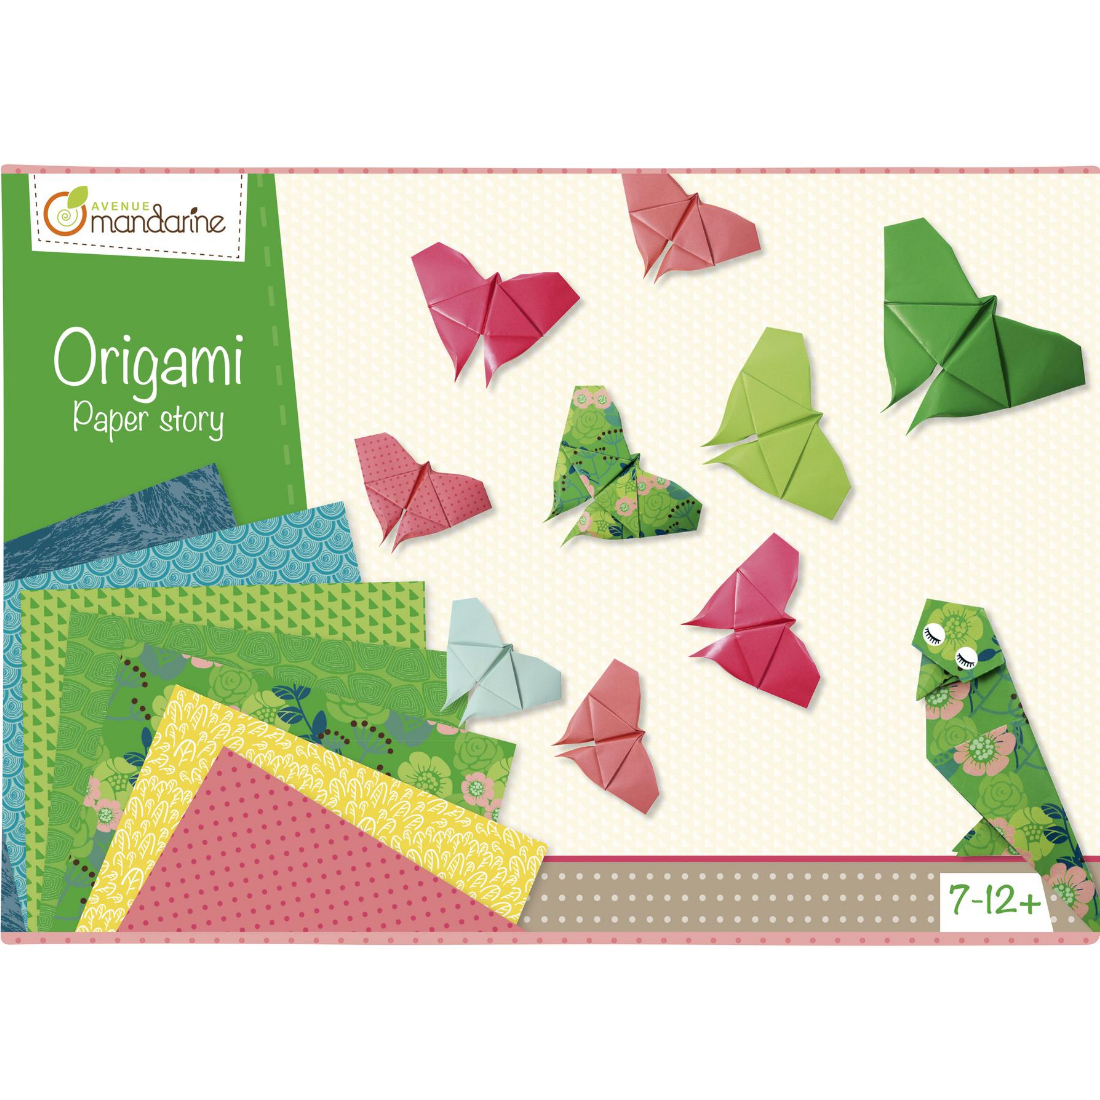 Caixa Criativa Papel Origami Animais avenue mandarine